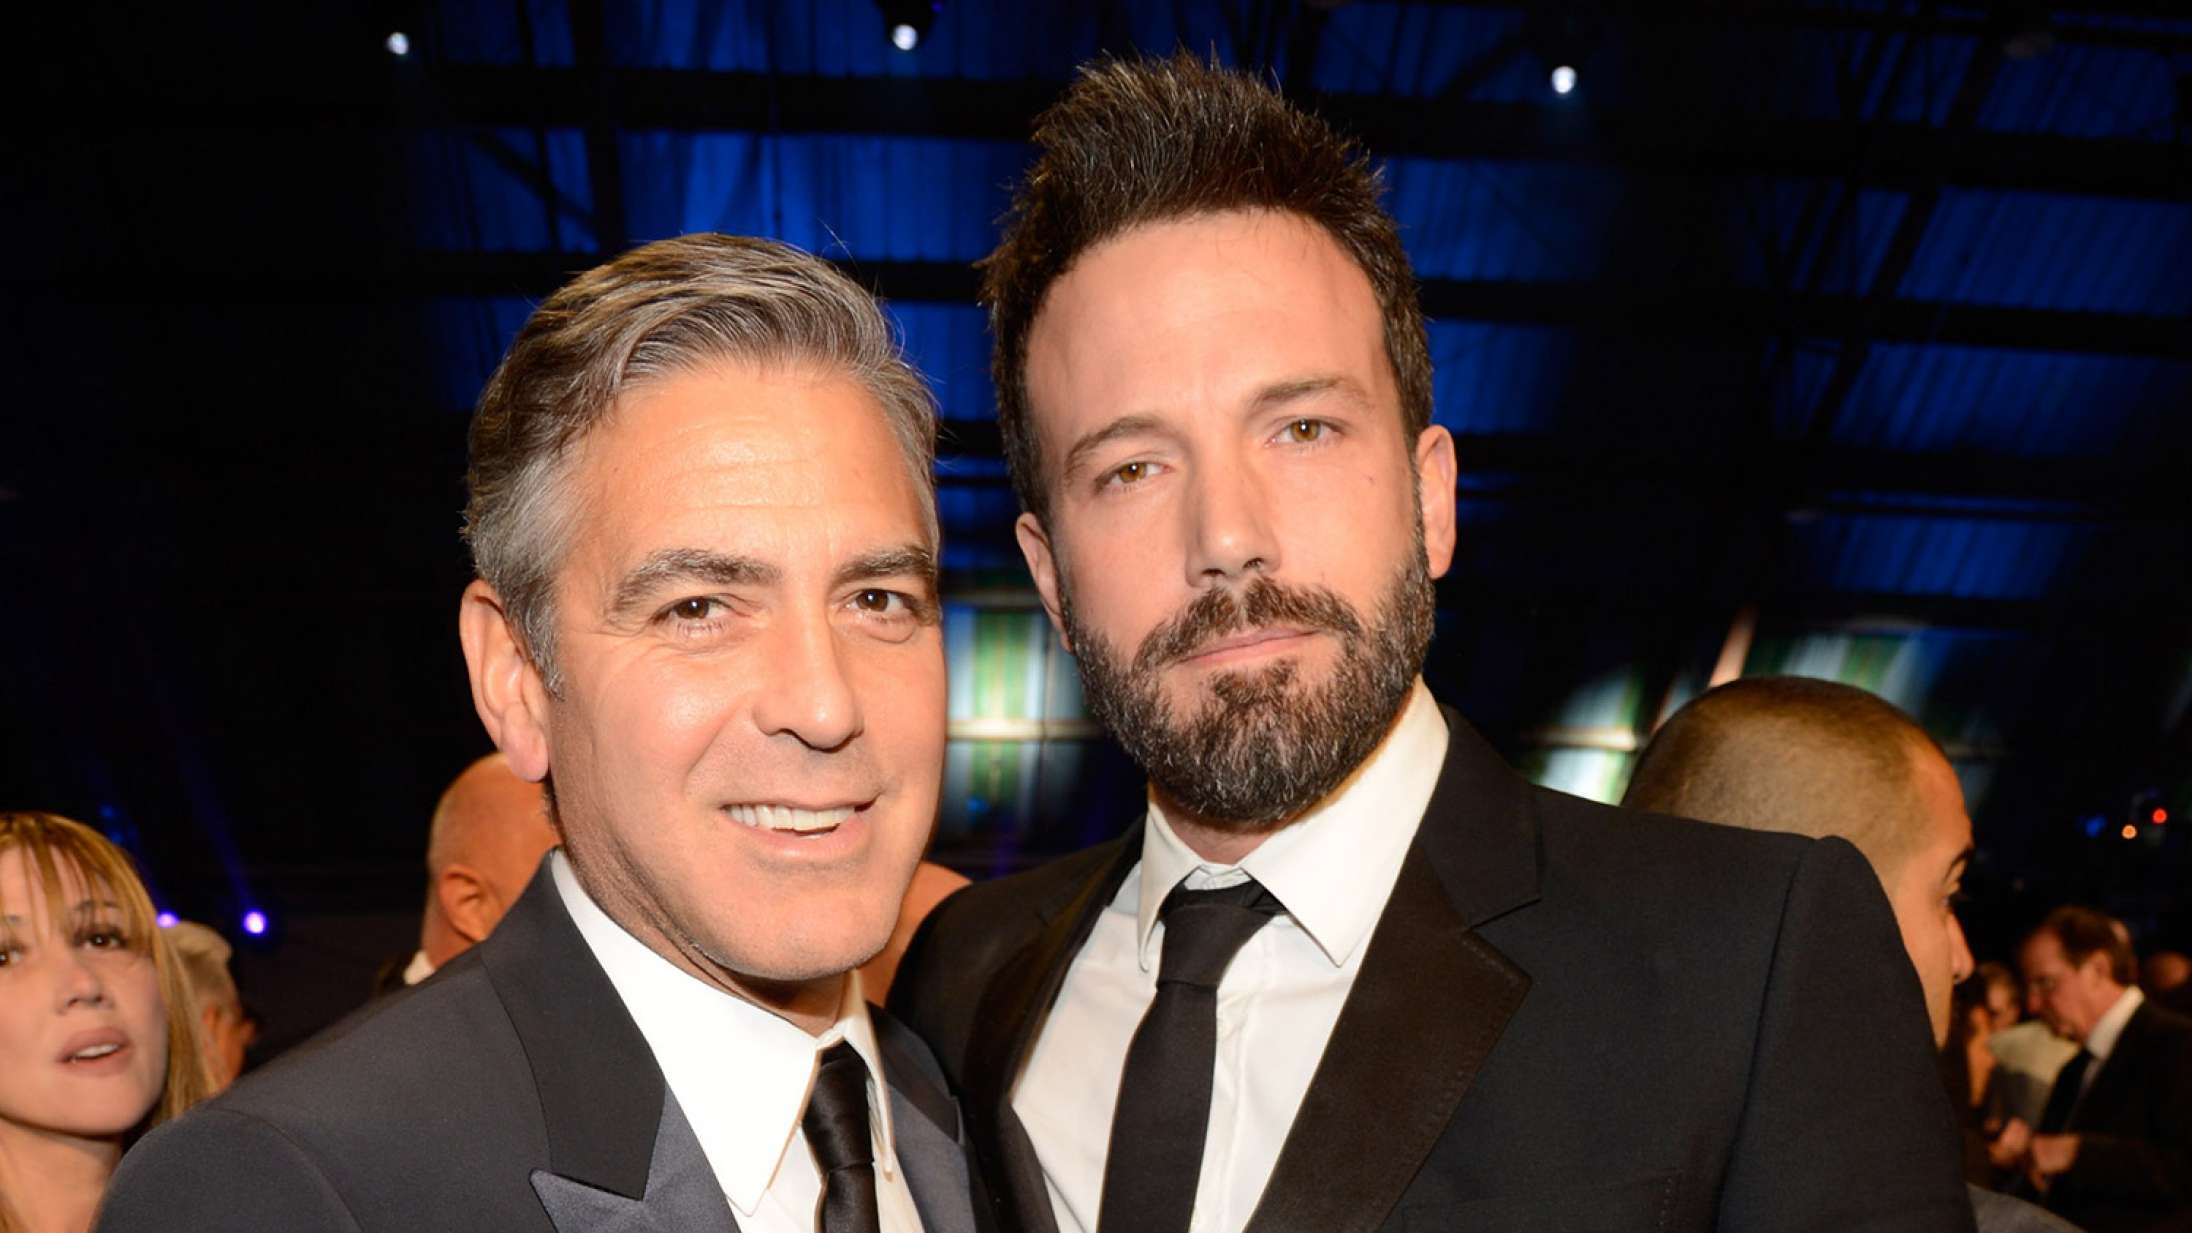 Stjerner som George Clooney, Emma Stone og Ben Affleck vil betale milliardbeløb for at ende strejken – fagforbund afslår